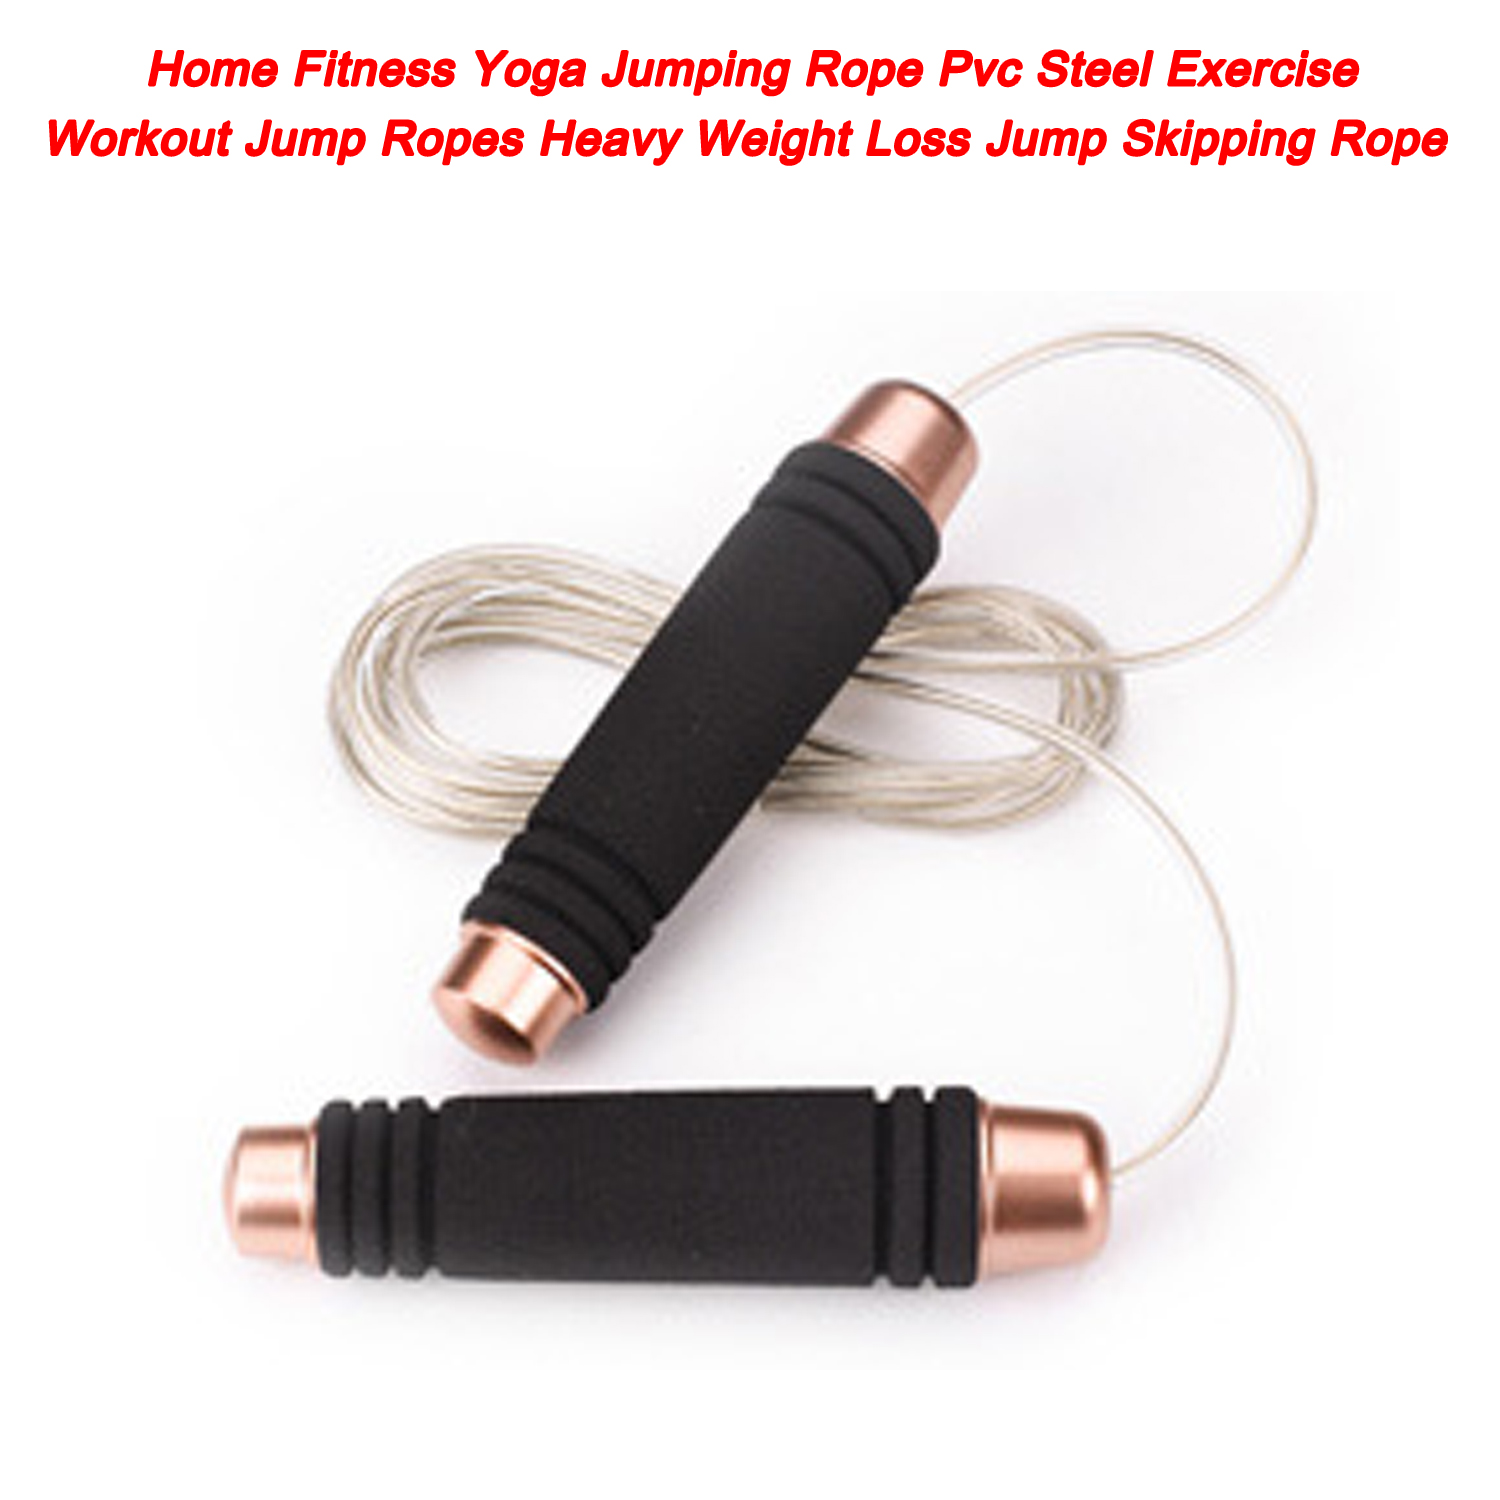 Cuerda de saltar de Yoga para Fitness en casa, cuerda de saltar de ejercicio de acero de Pvc para pérdida de peso pesado, cuerda para saltar